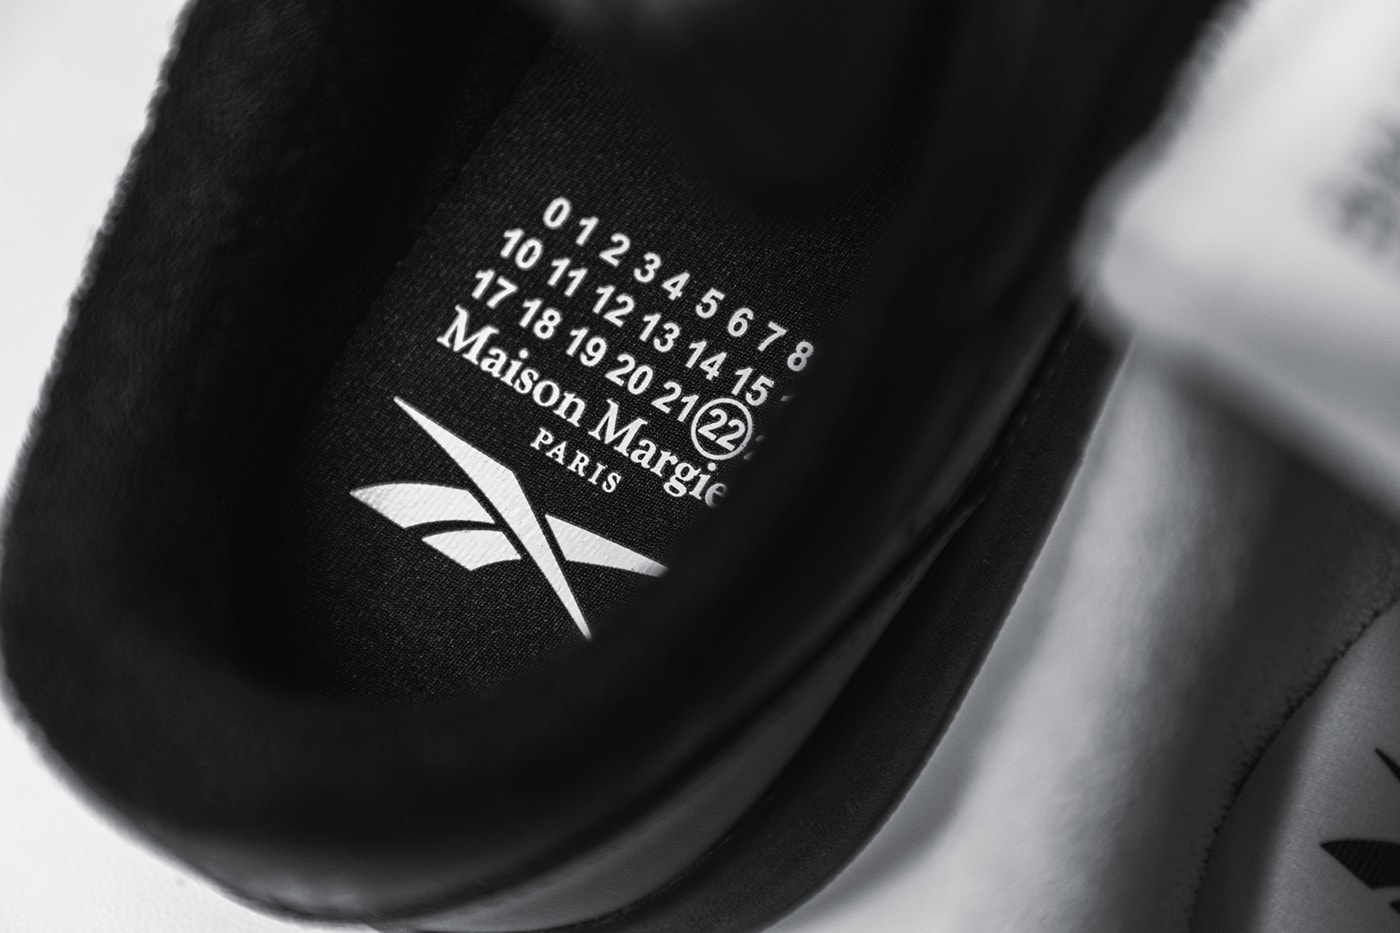 獨家近賞 Maison Margiela x Reebok 最新聯名鞋款 Classic Leather Tabi